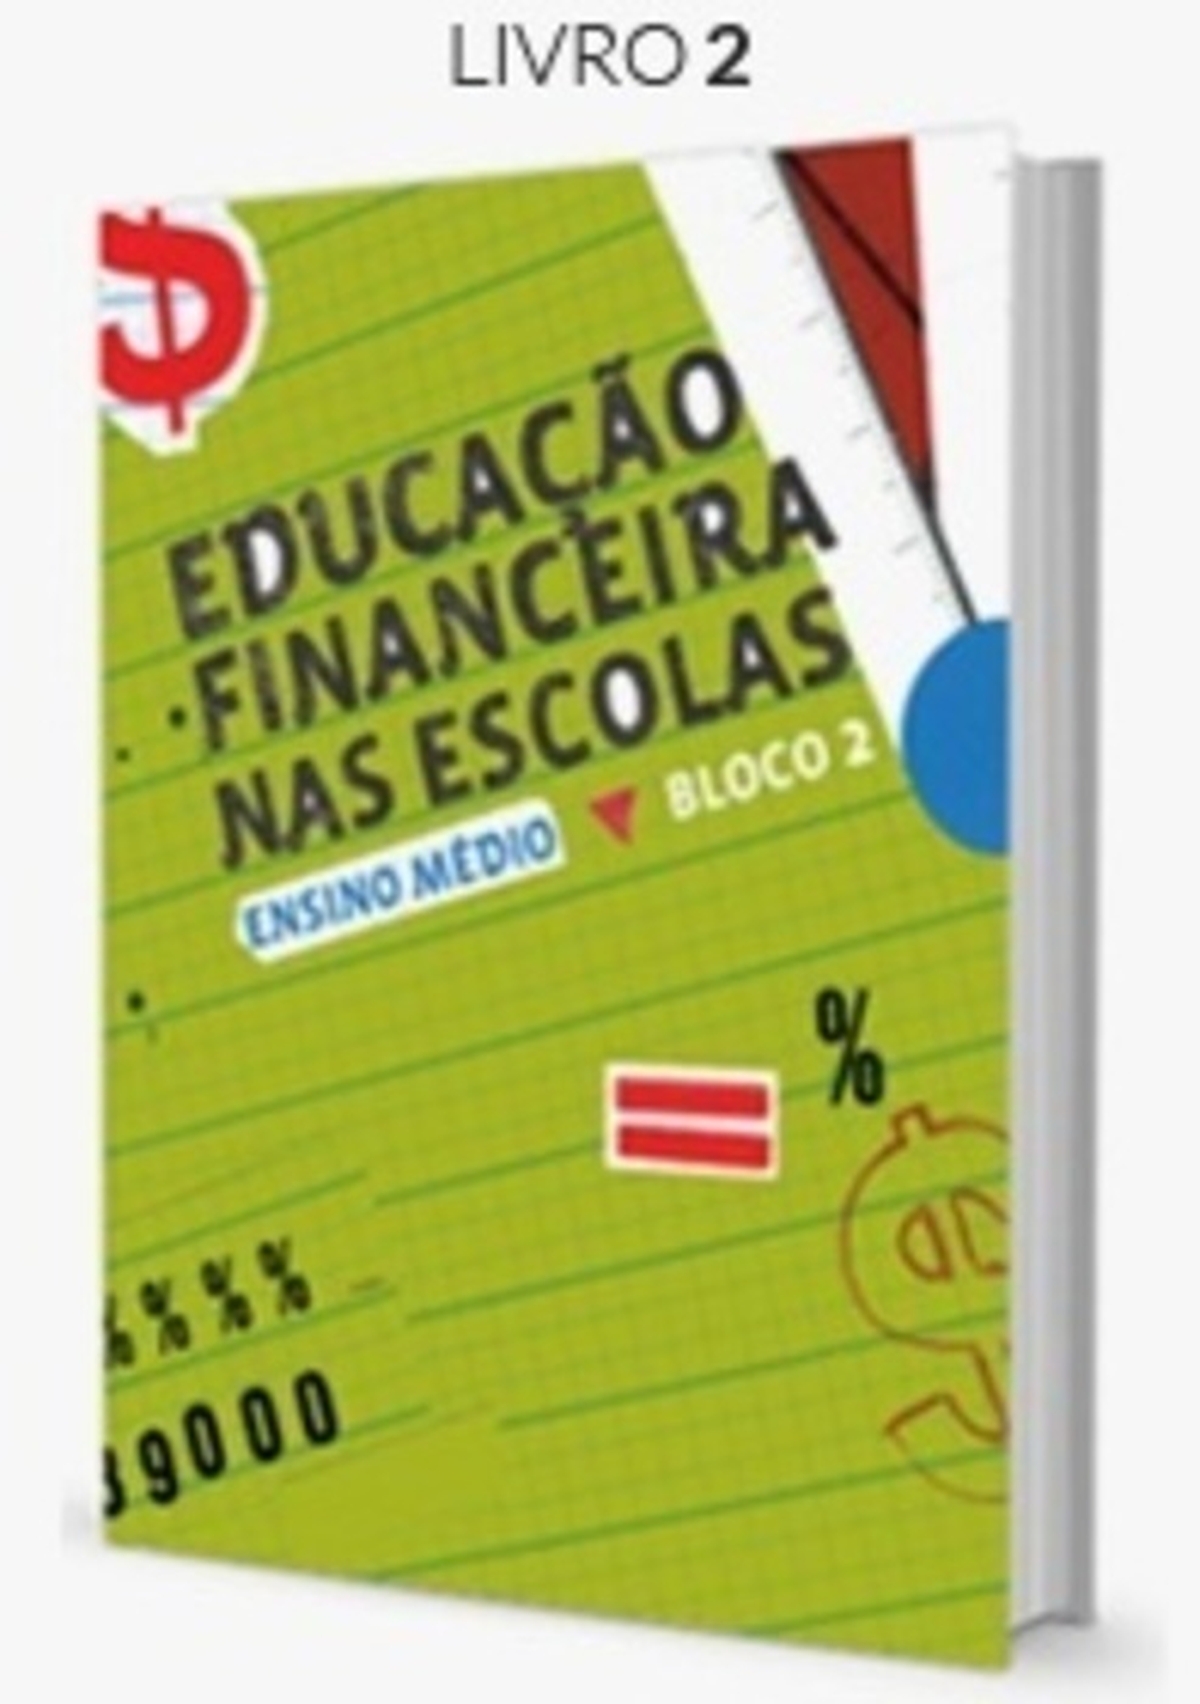 Educação  Financeira  - Adultos e jovens - Livro 2